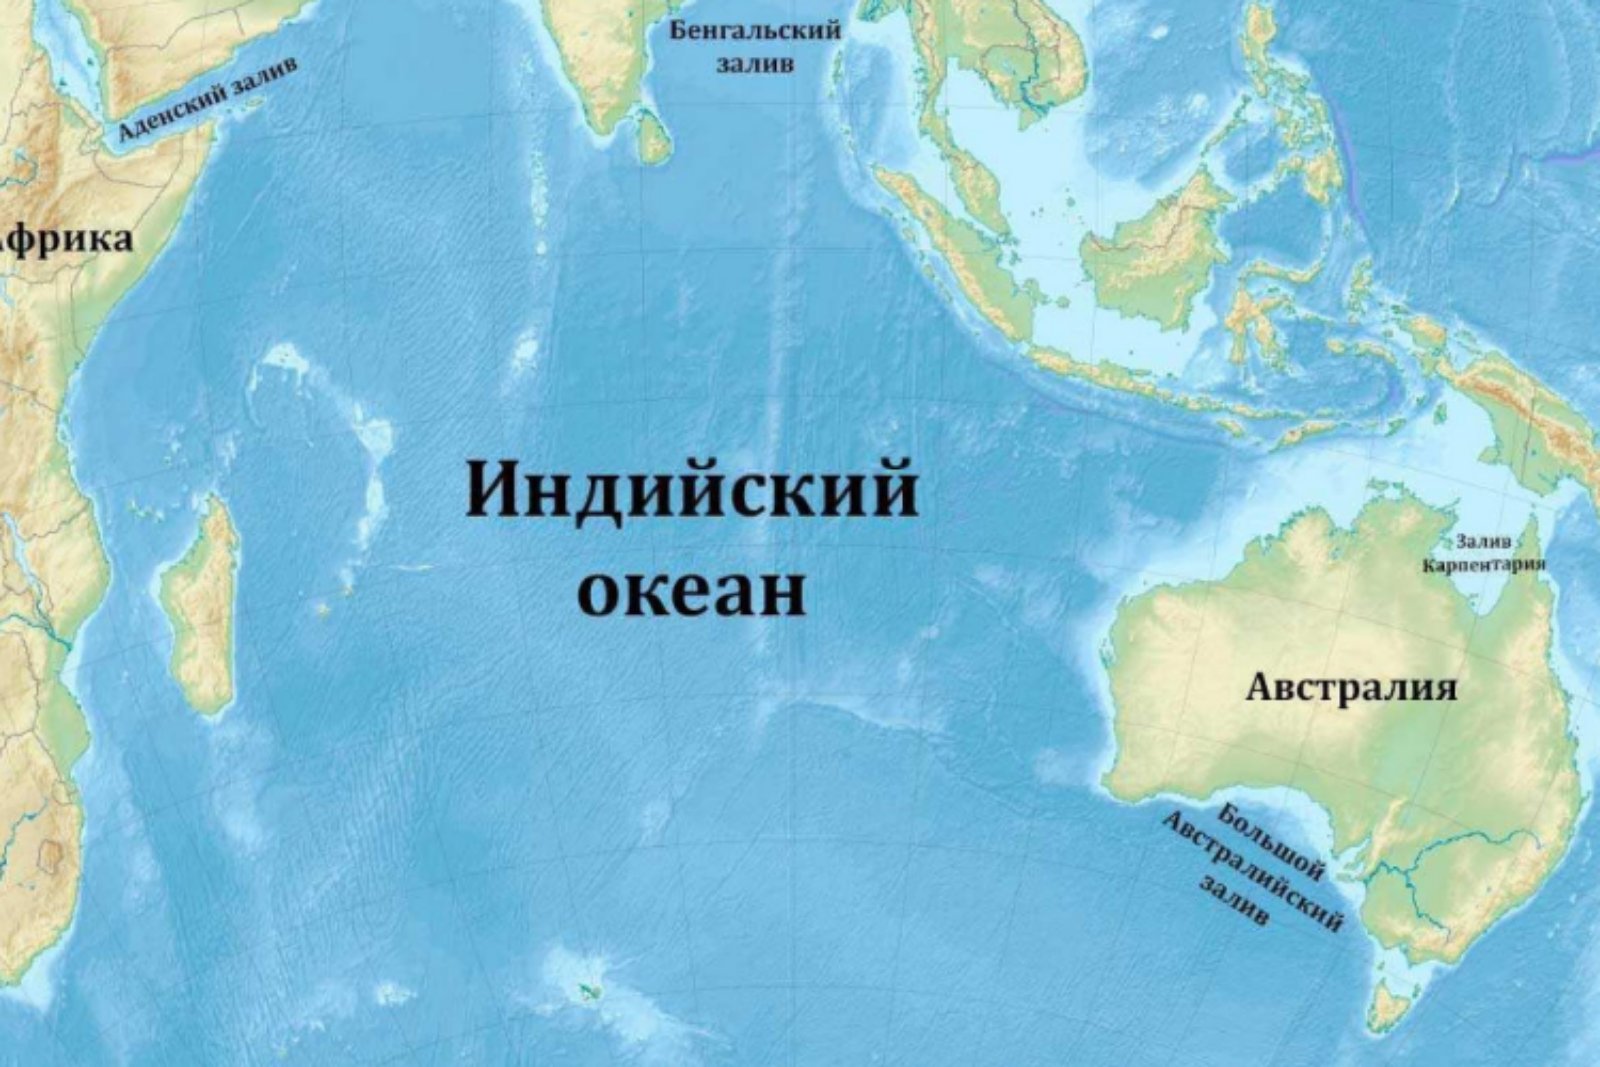 В каком океане больше морей. Оманский залив на карте индийского океана. Заливы и проливы индийского океана на карте. Карта индийского океана с морями заливами и проливами. Индийский океан на карте.